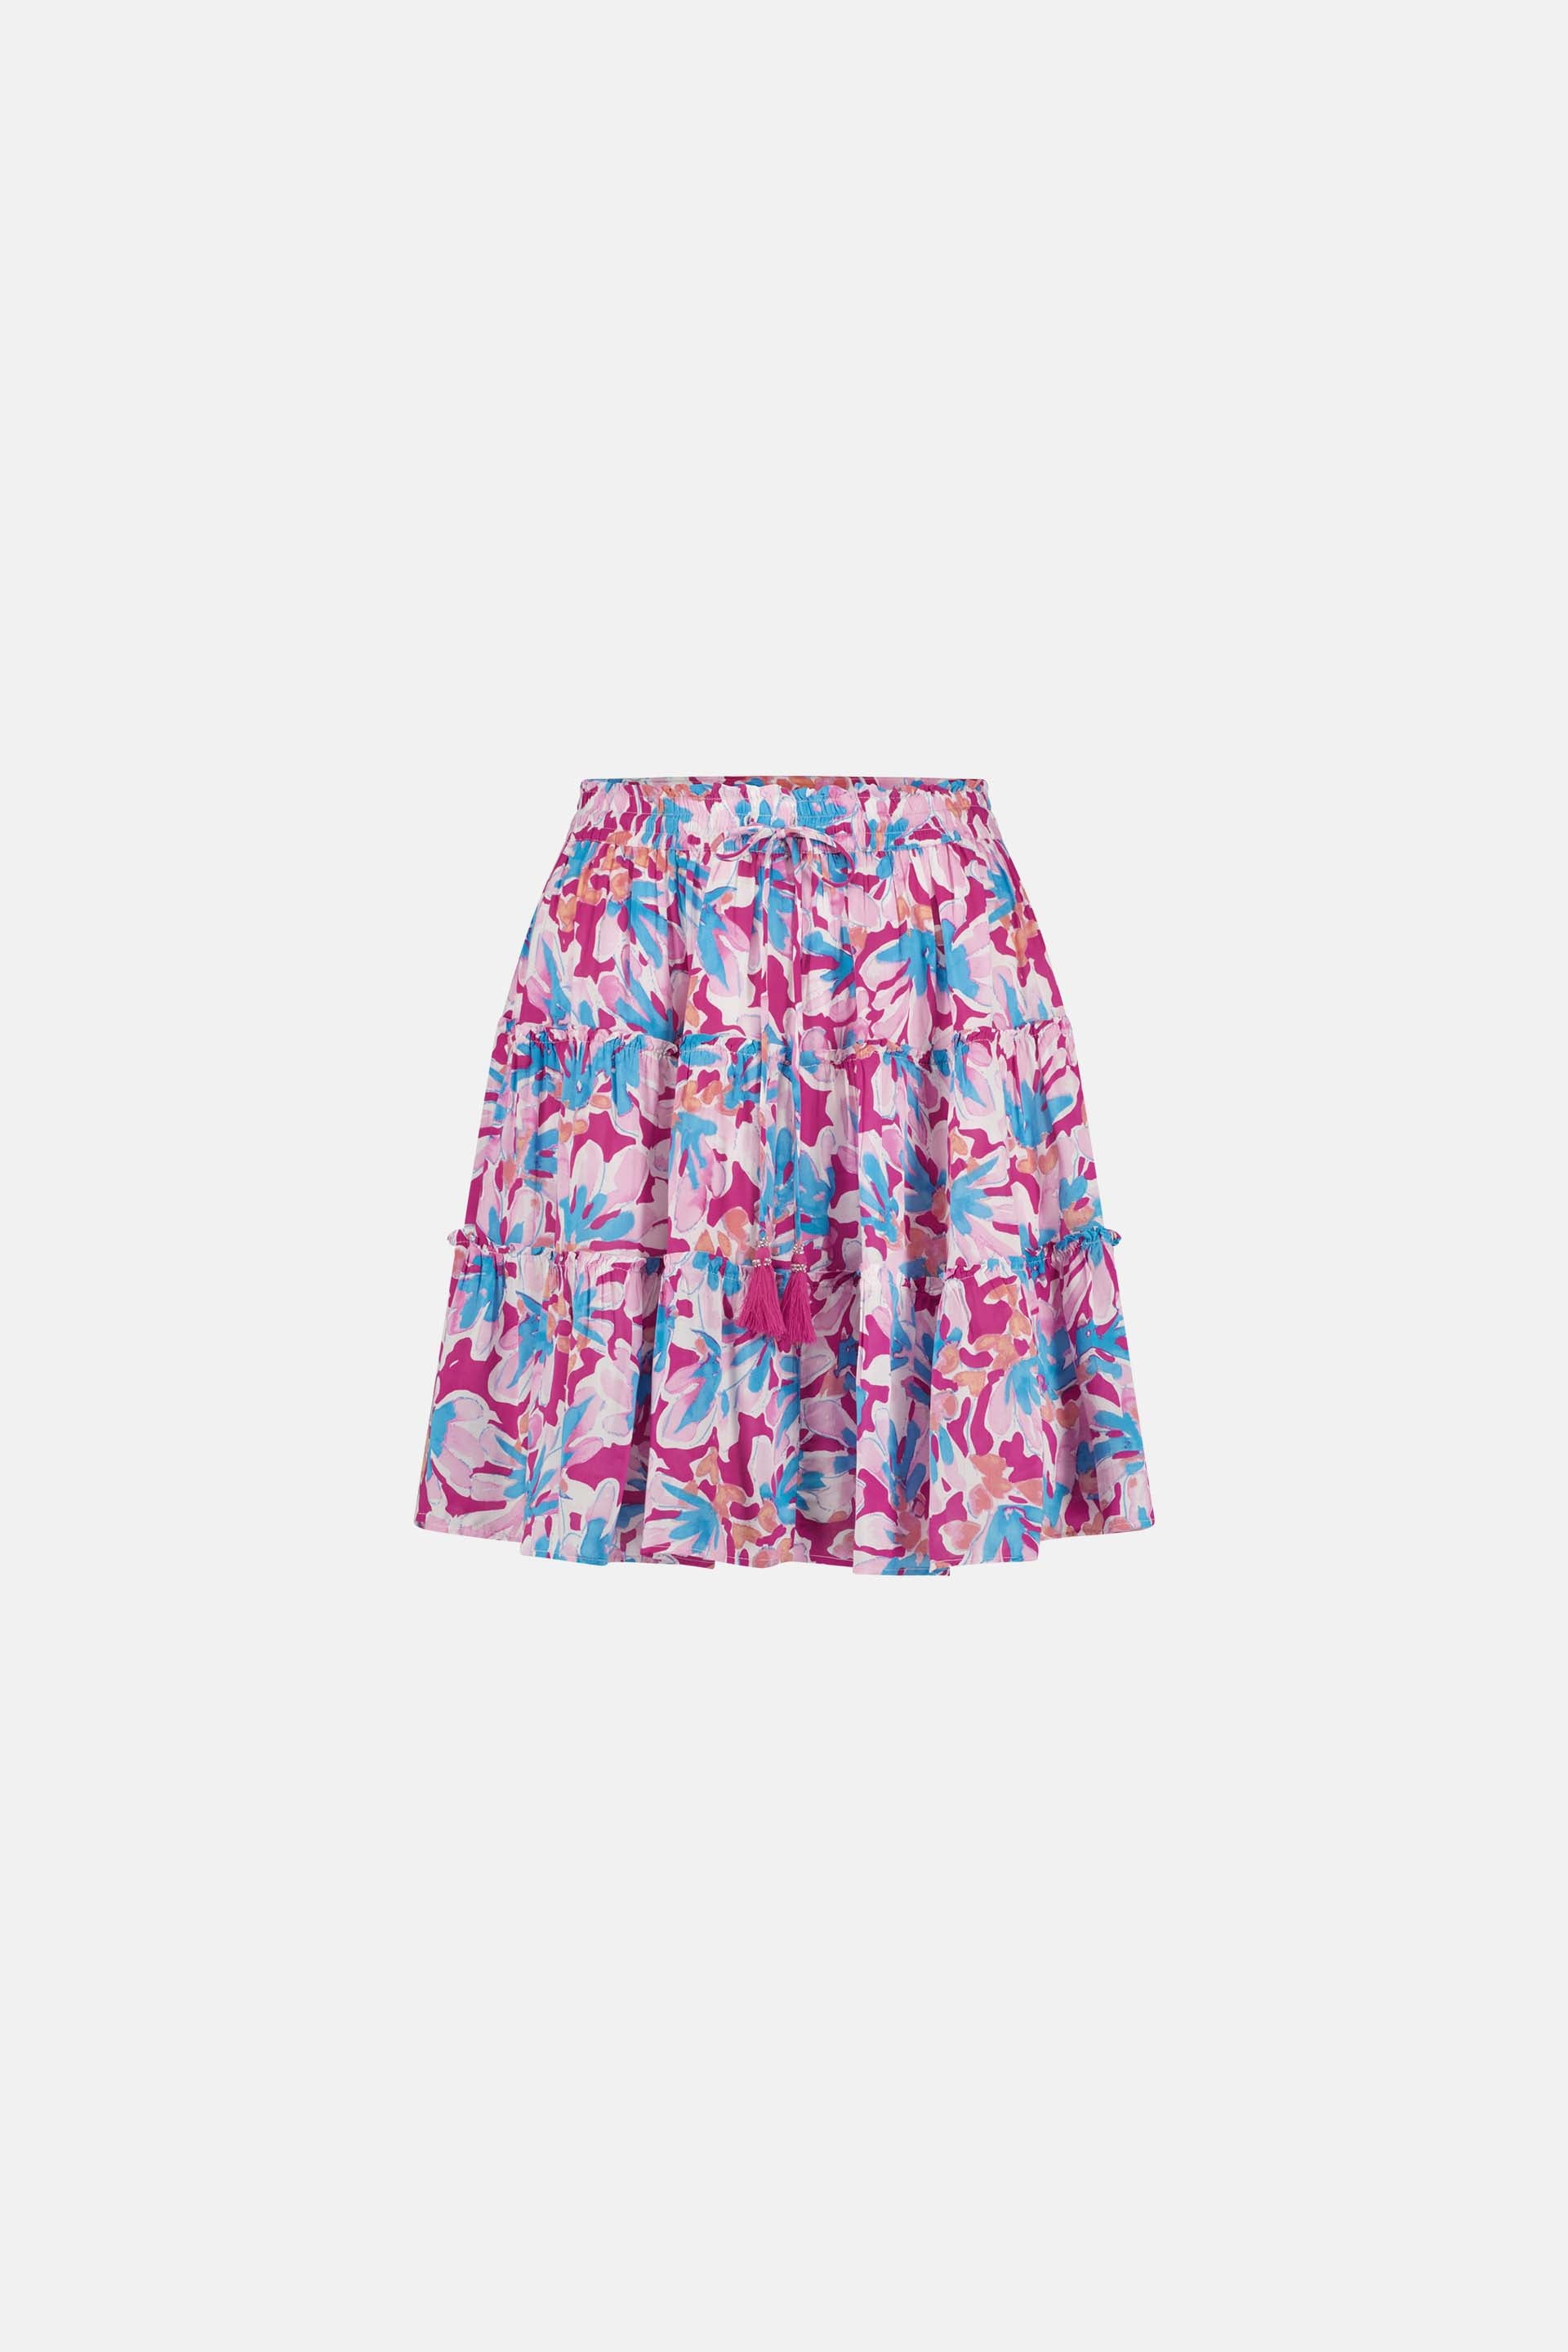 Mitzi Skirt | Azure Blue/Hot Pink